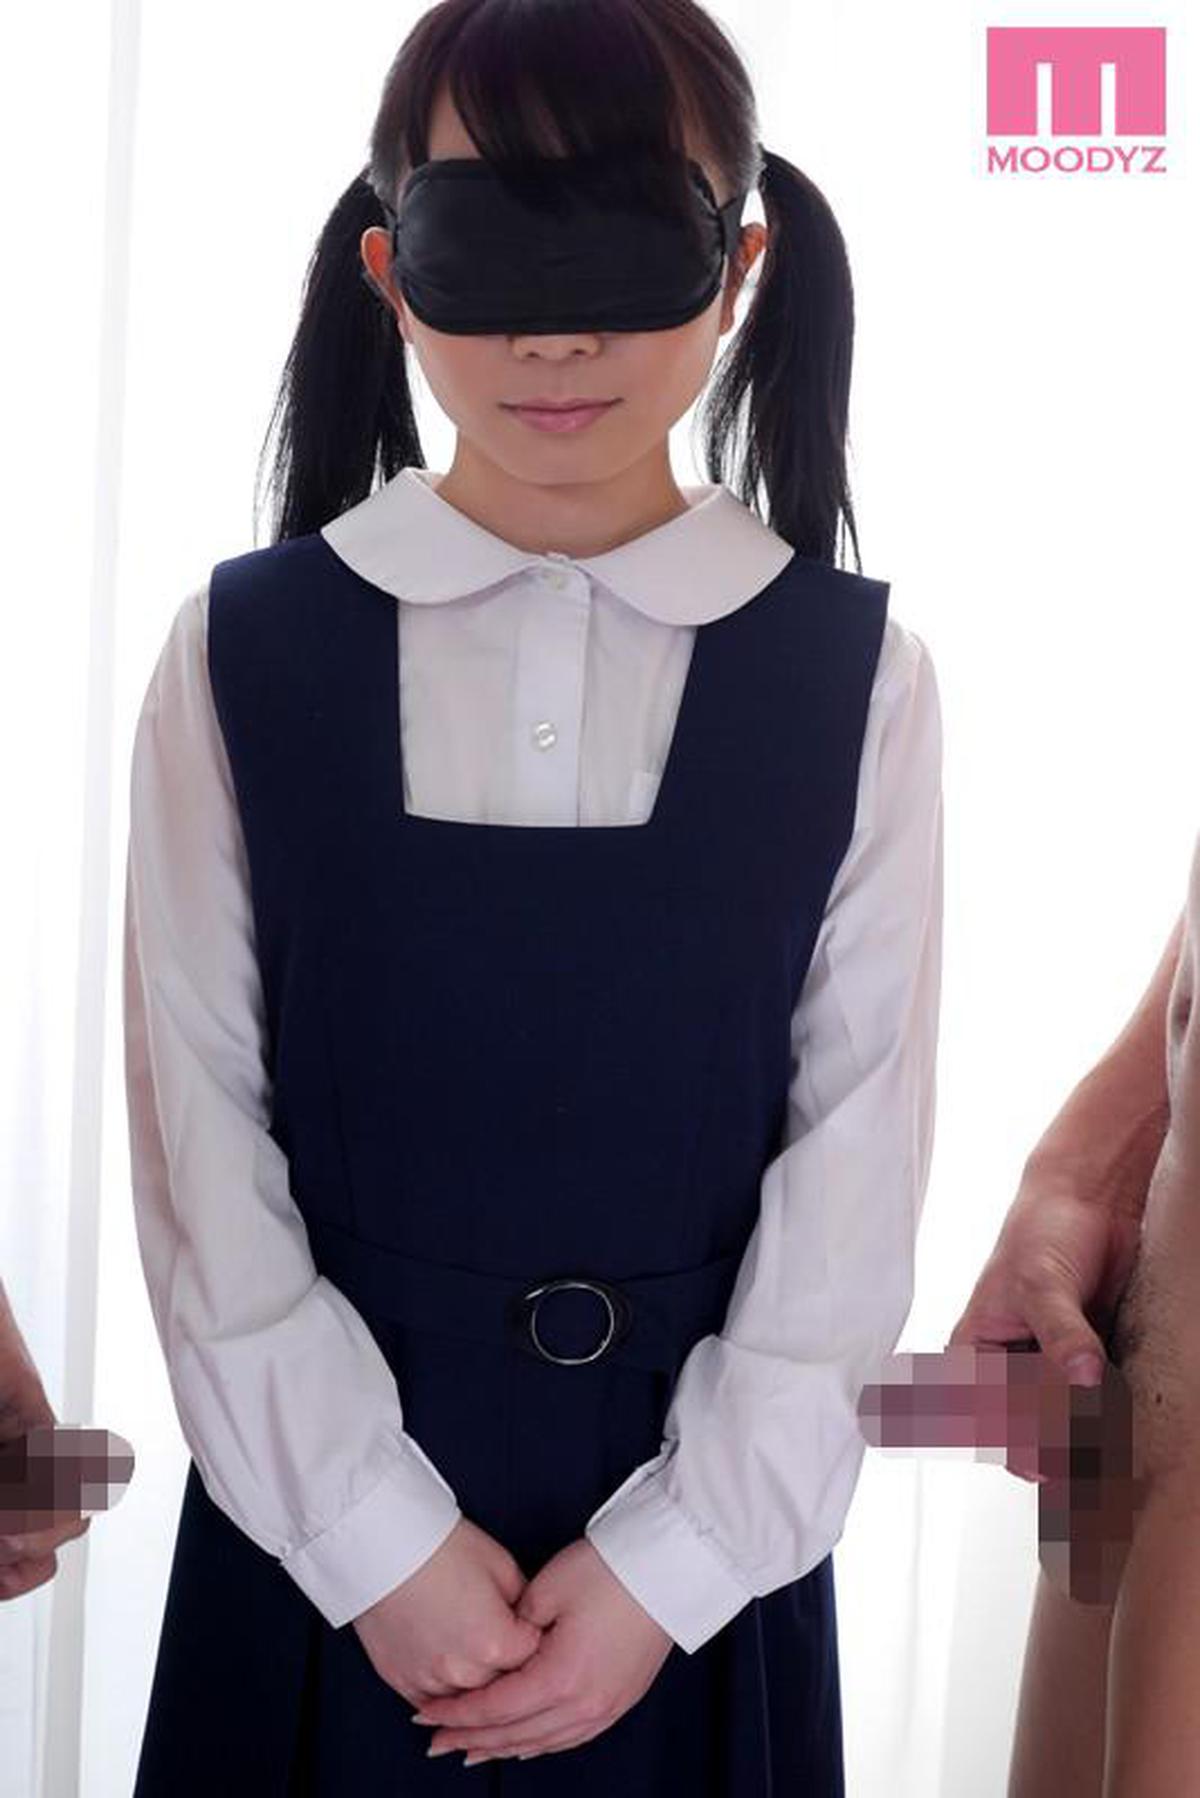 MIAD-781 AV fait ses débuts AV en trompant une fille NG et les yeux bandés pour ne pas se faire remarquer Akane Yuuki